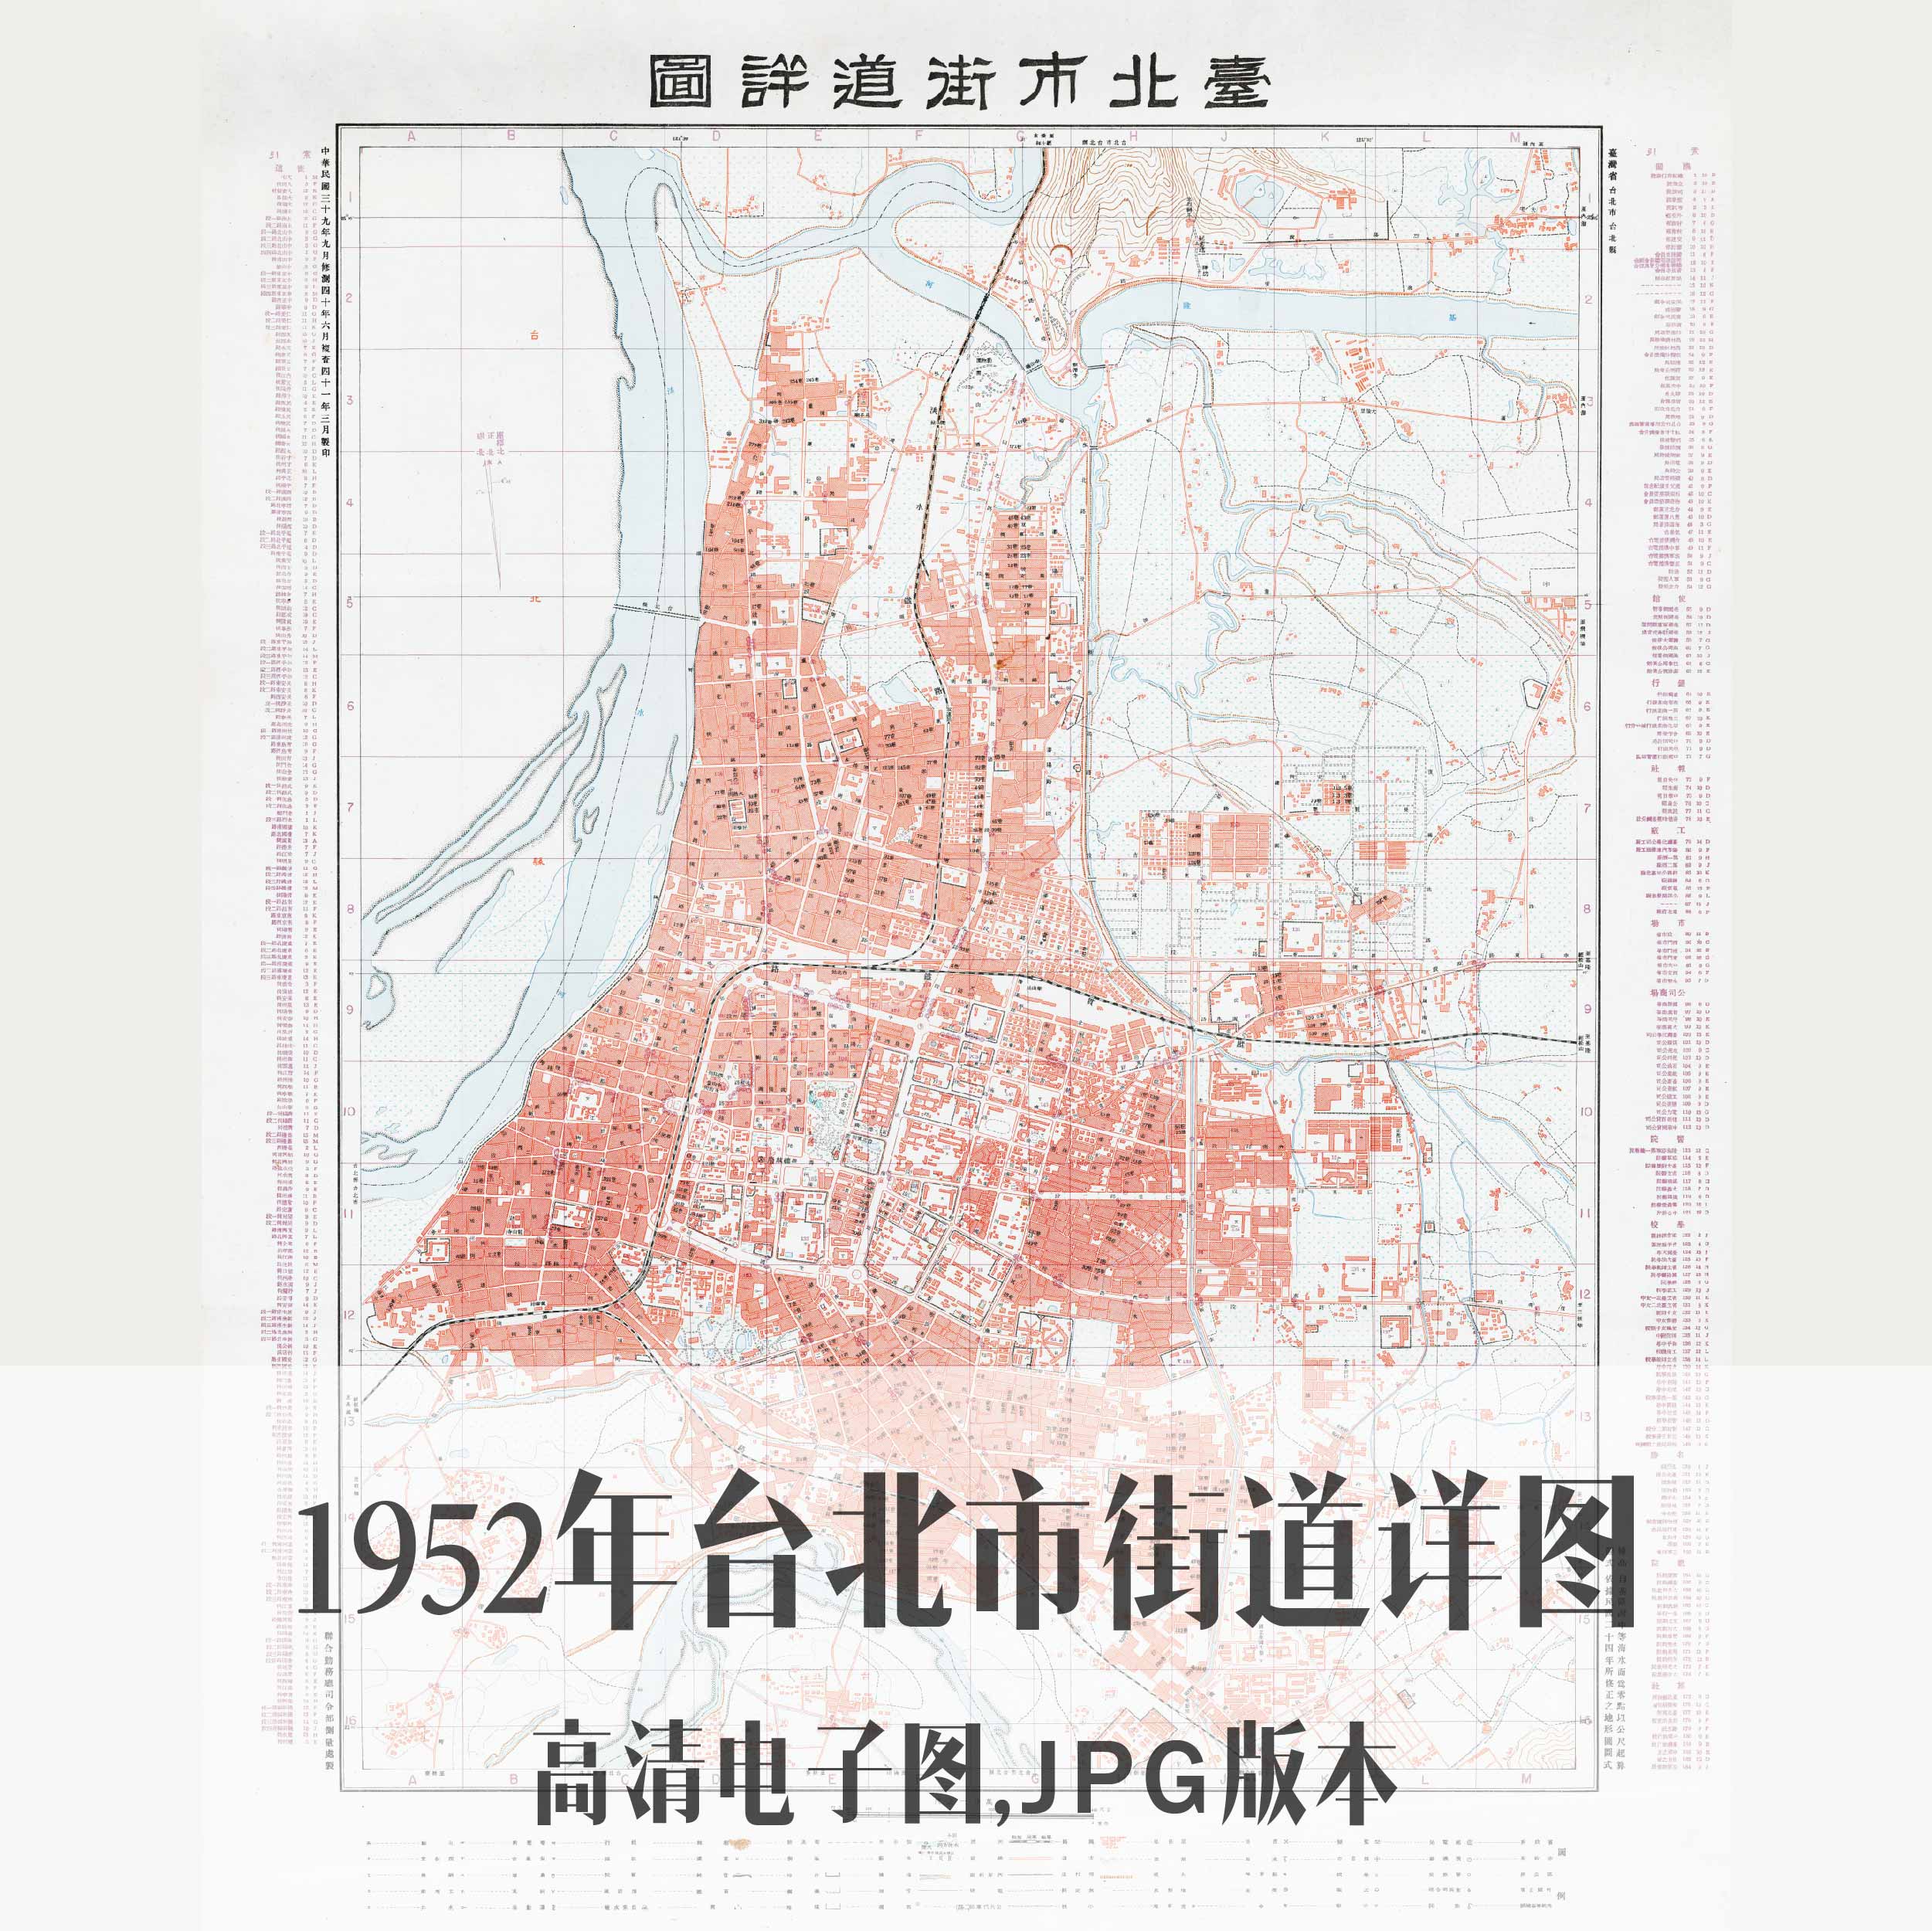 1952年台北市街道详图电子老地图历史地理资料素材